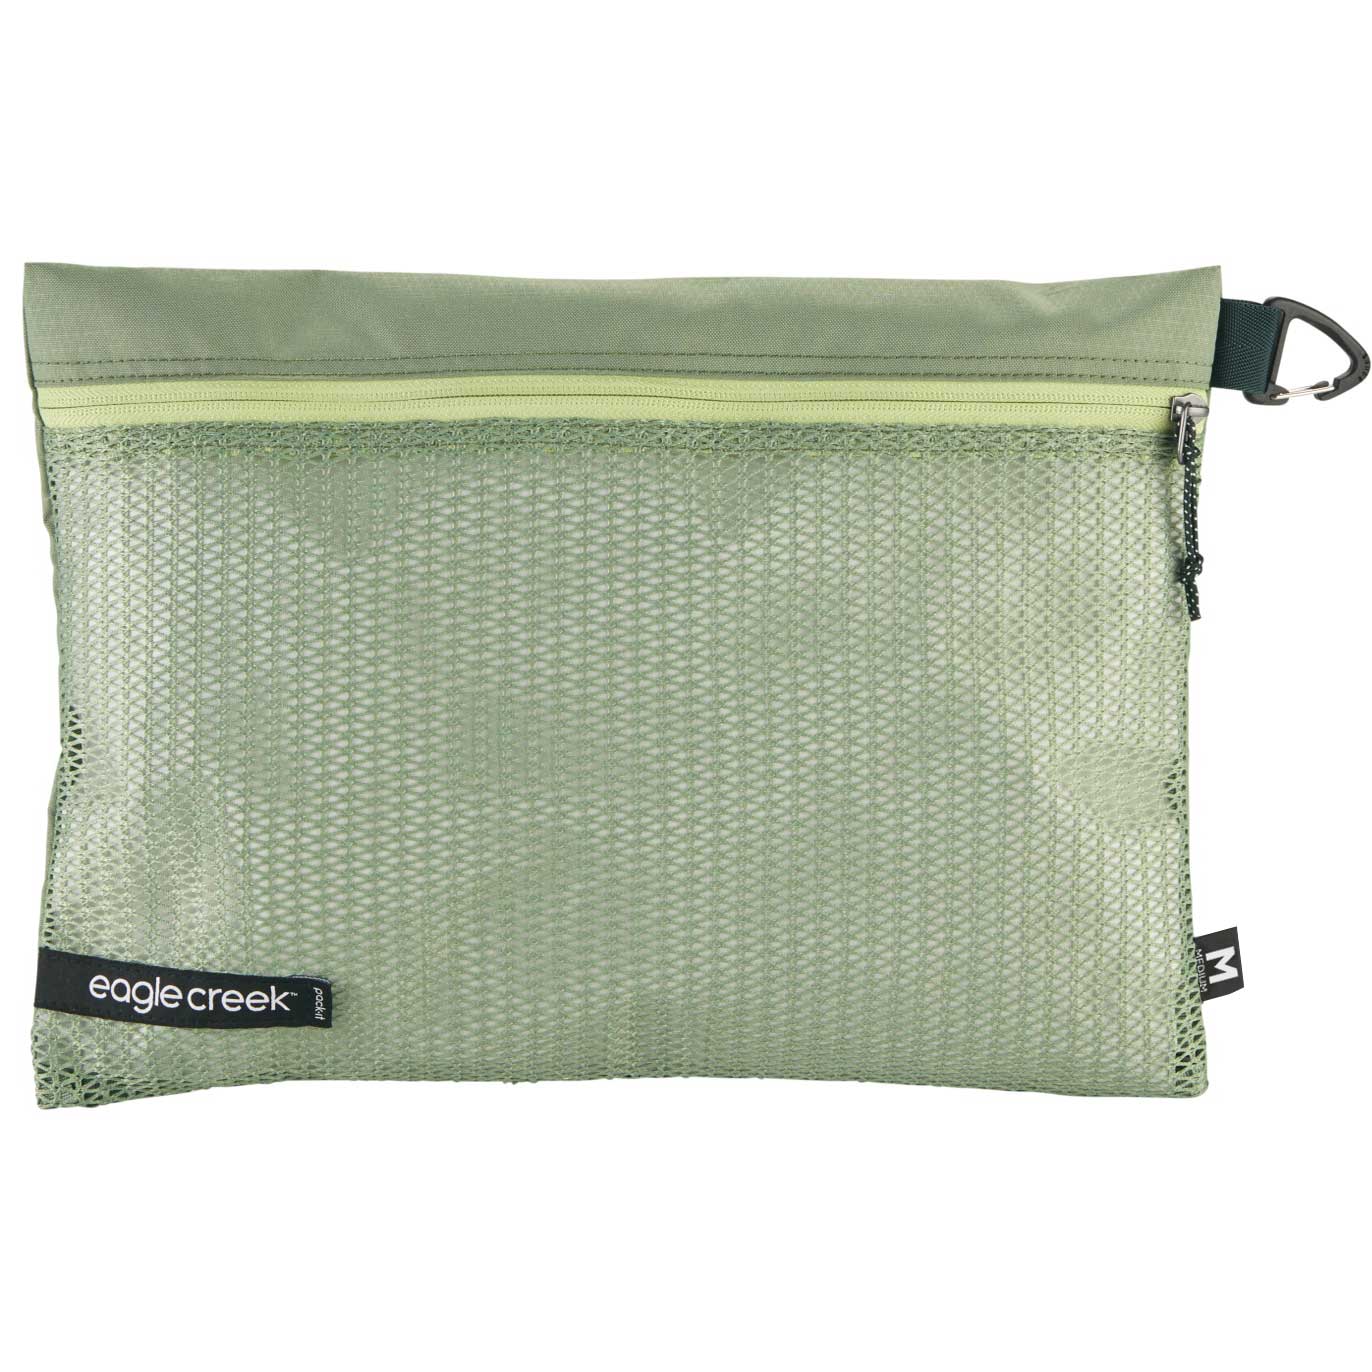 Produktbild von Eagle Creek Pack-It Reveal Sac M - Packtasche - mossy green